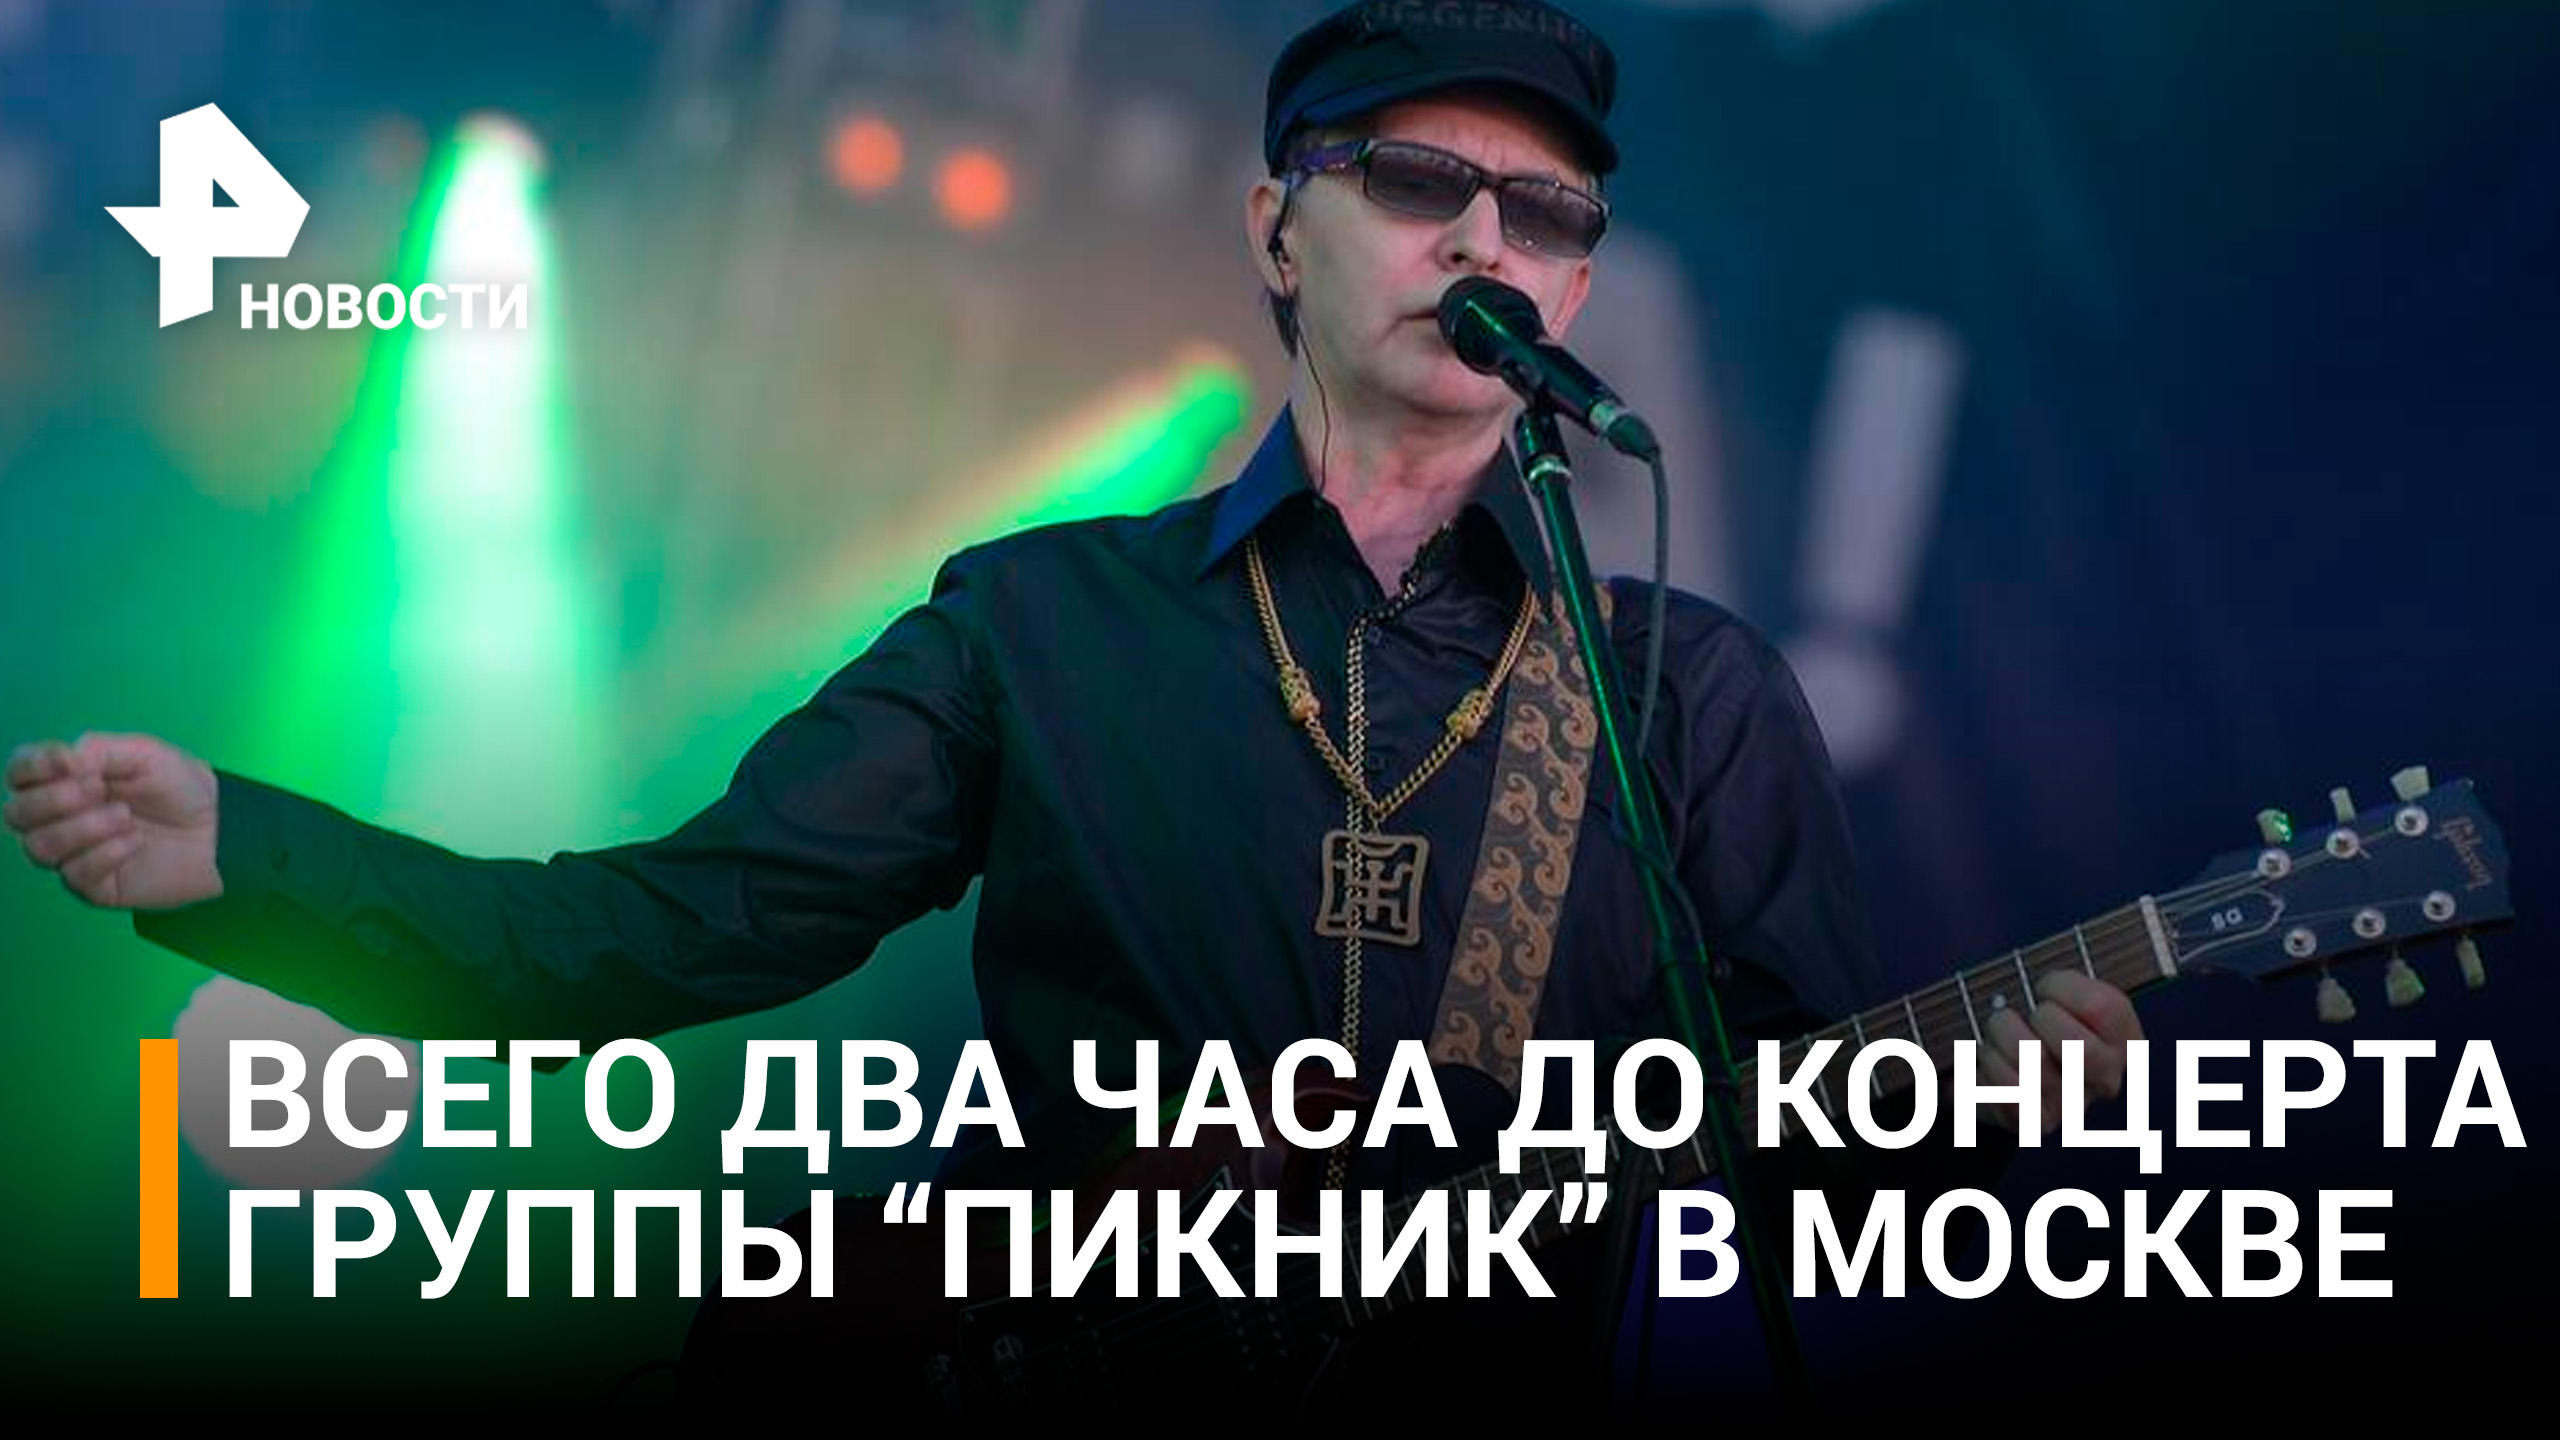 Группа "Пикник" провела последние репетиции перед грандиозным концертом в Москве / РЕН Новости